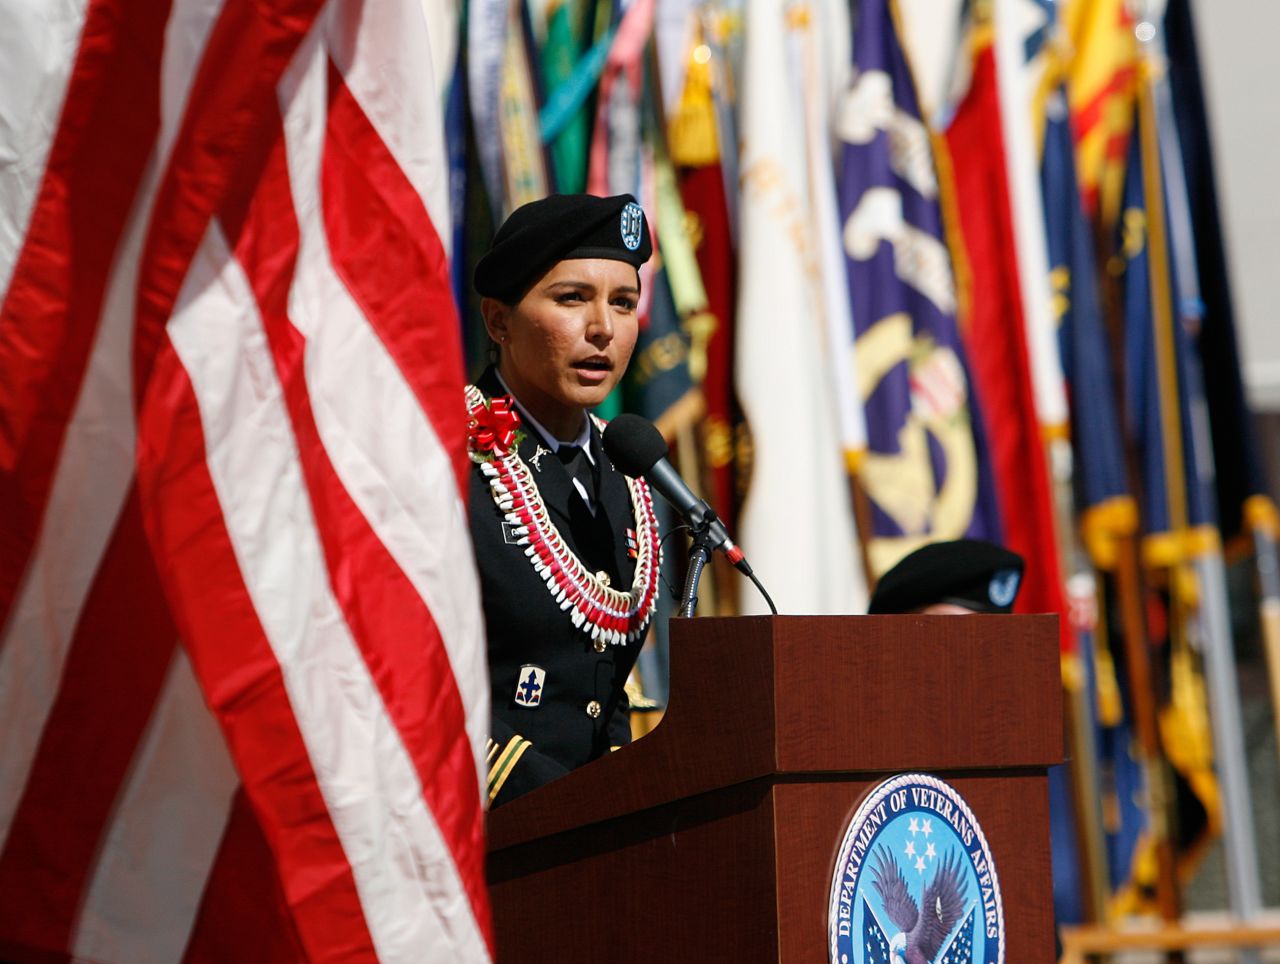 Gabbard was the keynote speaker for Veterans Day ceremonies in Honolulu in November 2013.